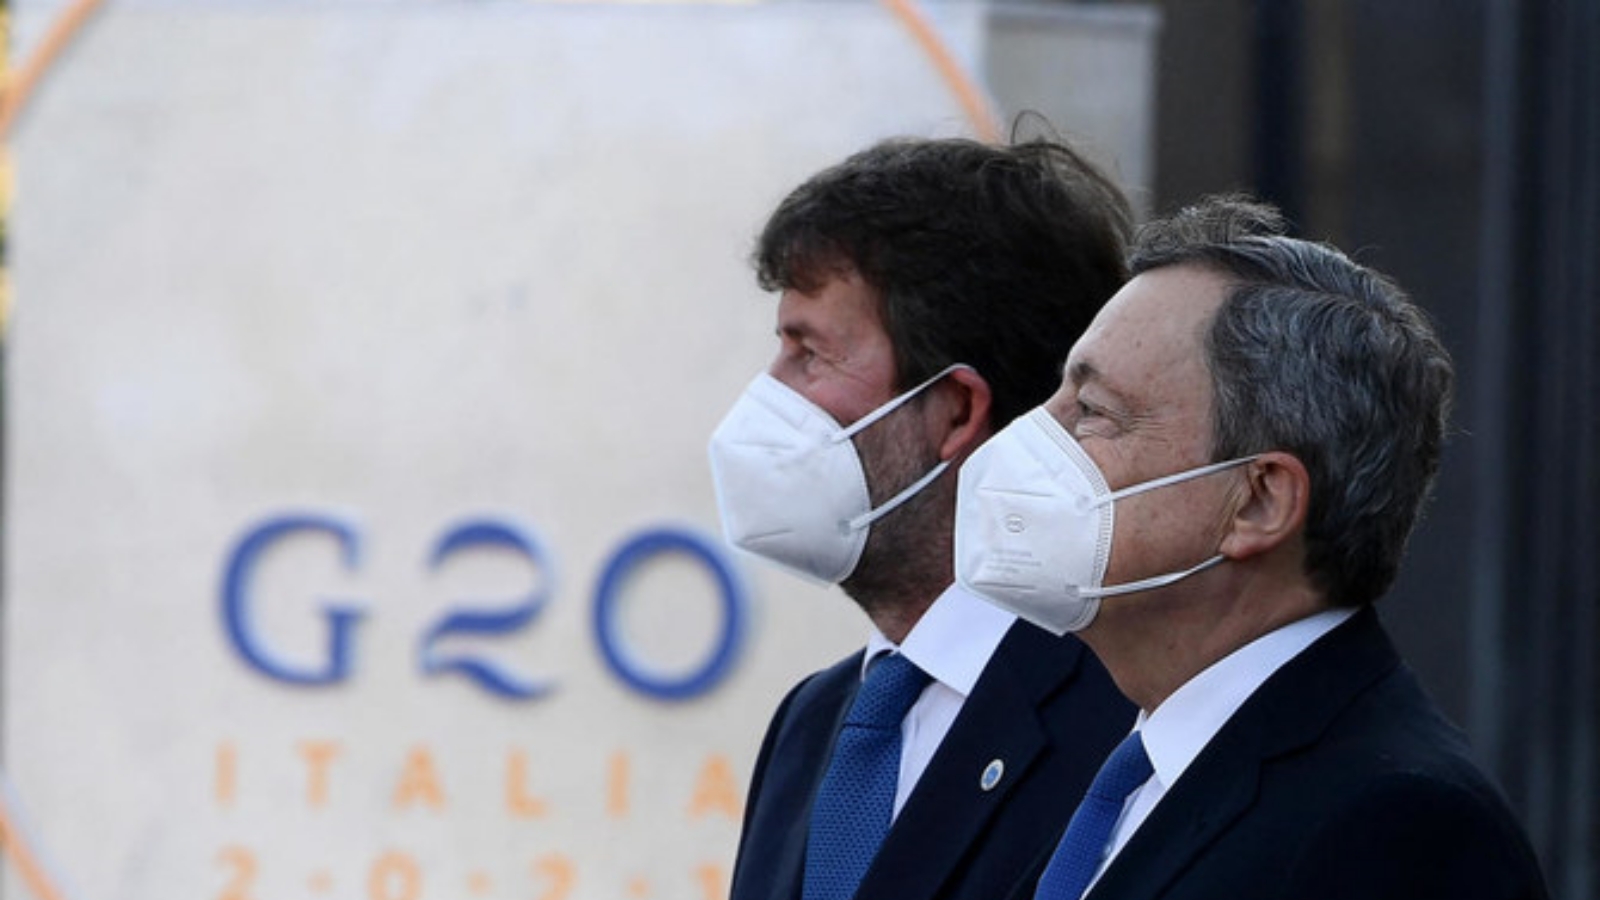 رئيس الوزراء الإيطالي ماريو دراجي (إلى اليمين) ووزير الثقافة داريو فرانشيسكيني وصلا إلى الكولوسيوم في اليوم الأول من اجتماع وزراء ثقافة مجموعة العشرين. بتاريخ 29 تموز/ يوليو 2021 في روما